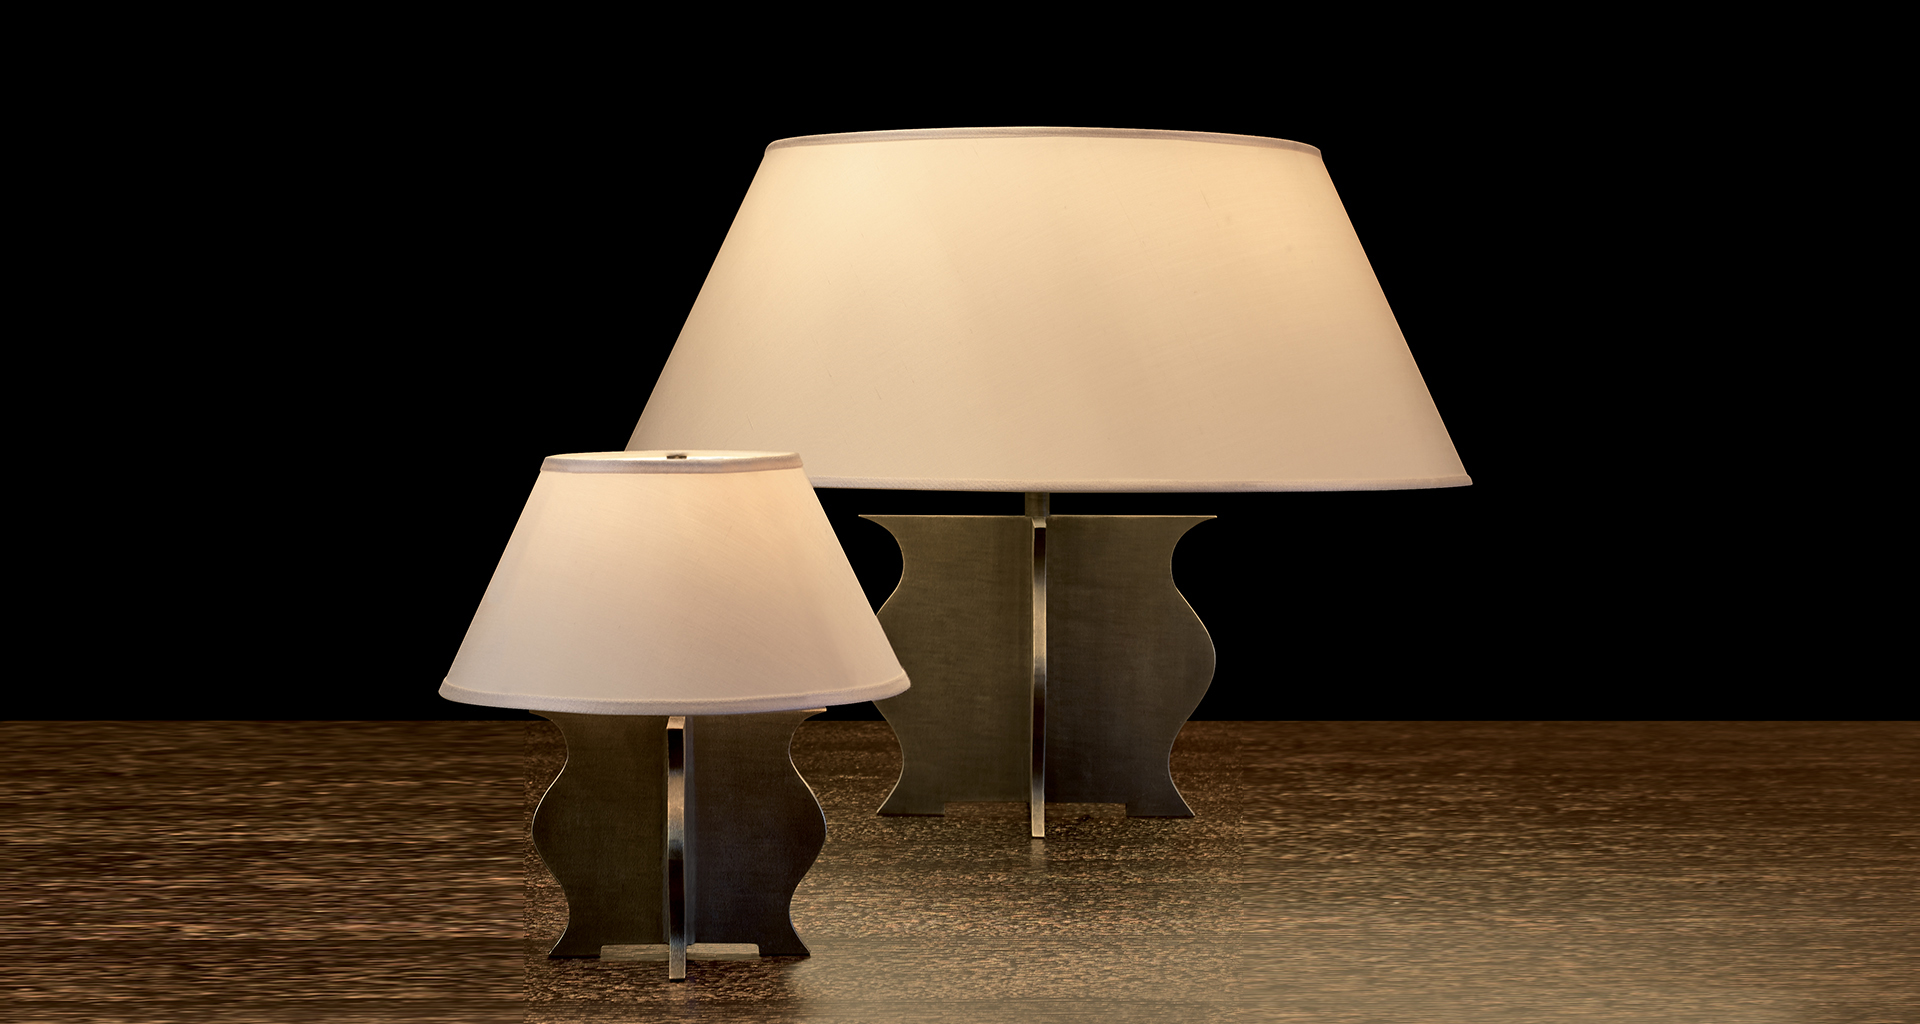 Renè è una lampada da tavolo e comodino a LED con struttura in bronzo, diffusori in metacrilato e paralume in lino, cotone o seta bordata a mano, del catalogo di Promemoria | Promemoria